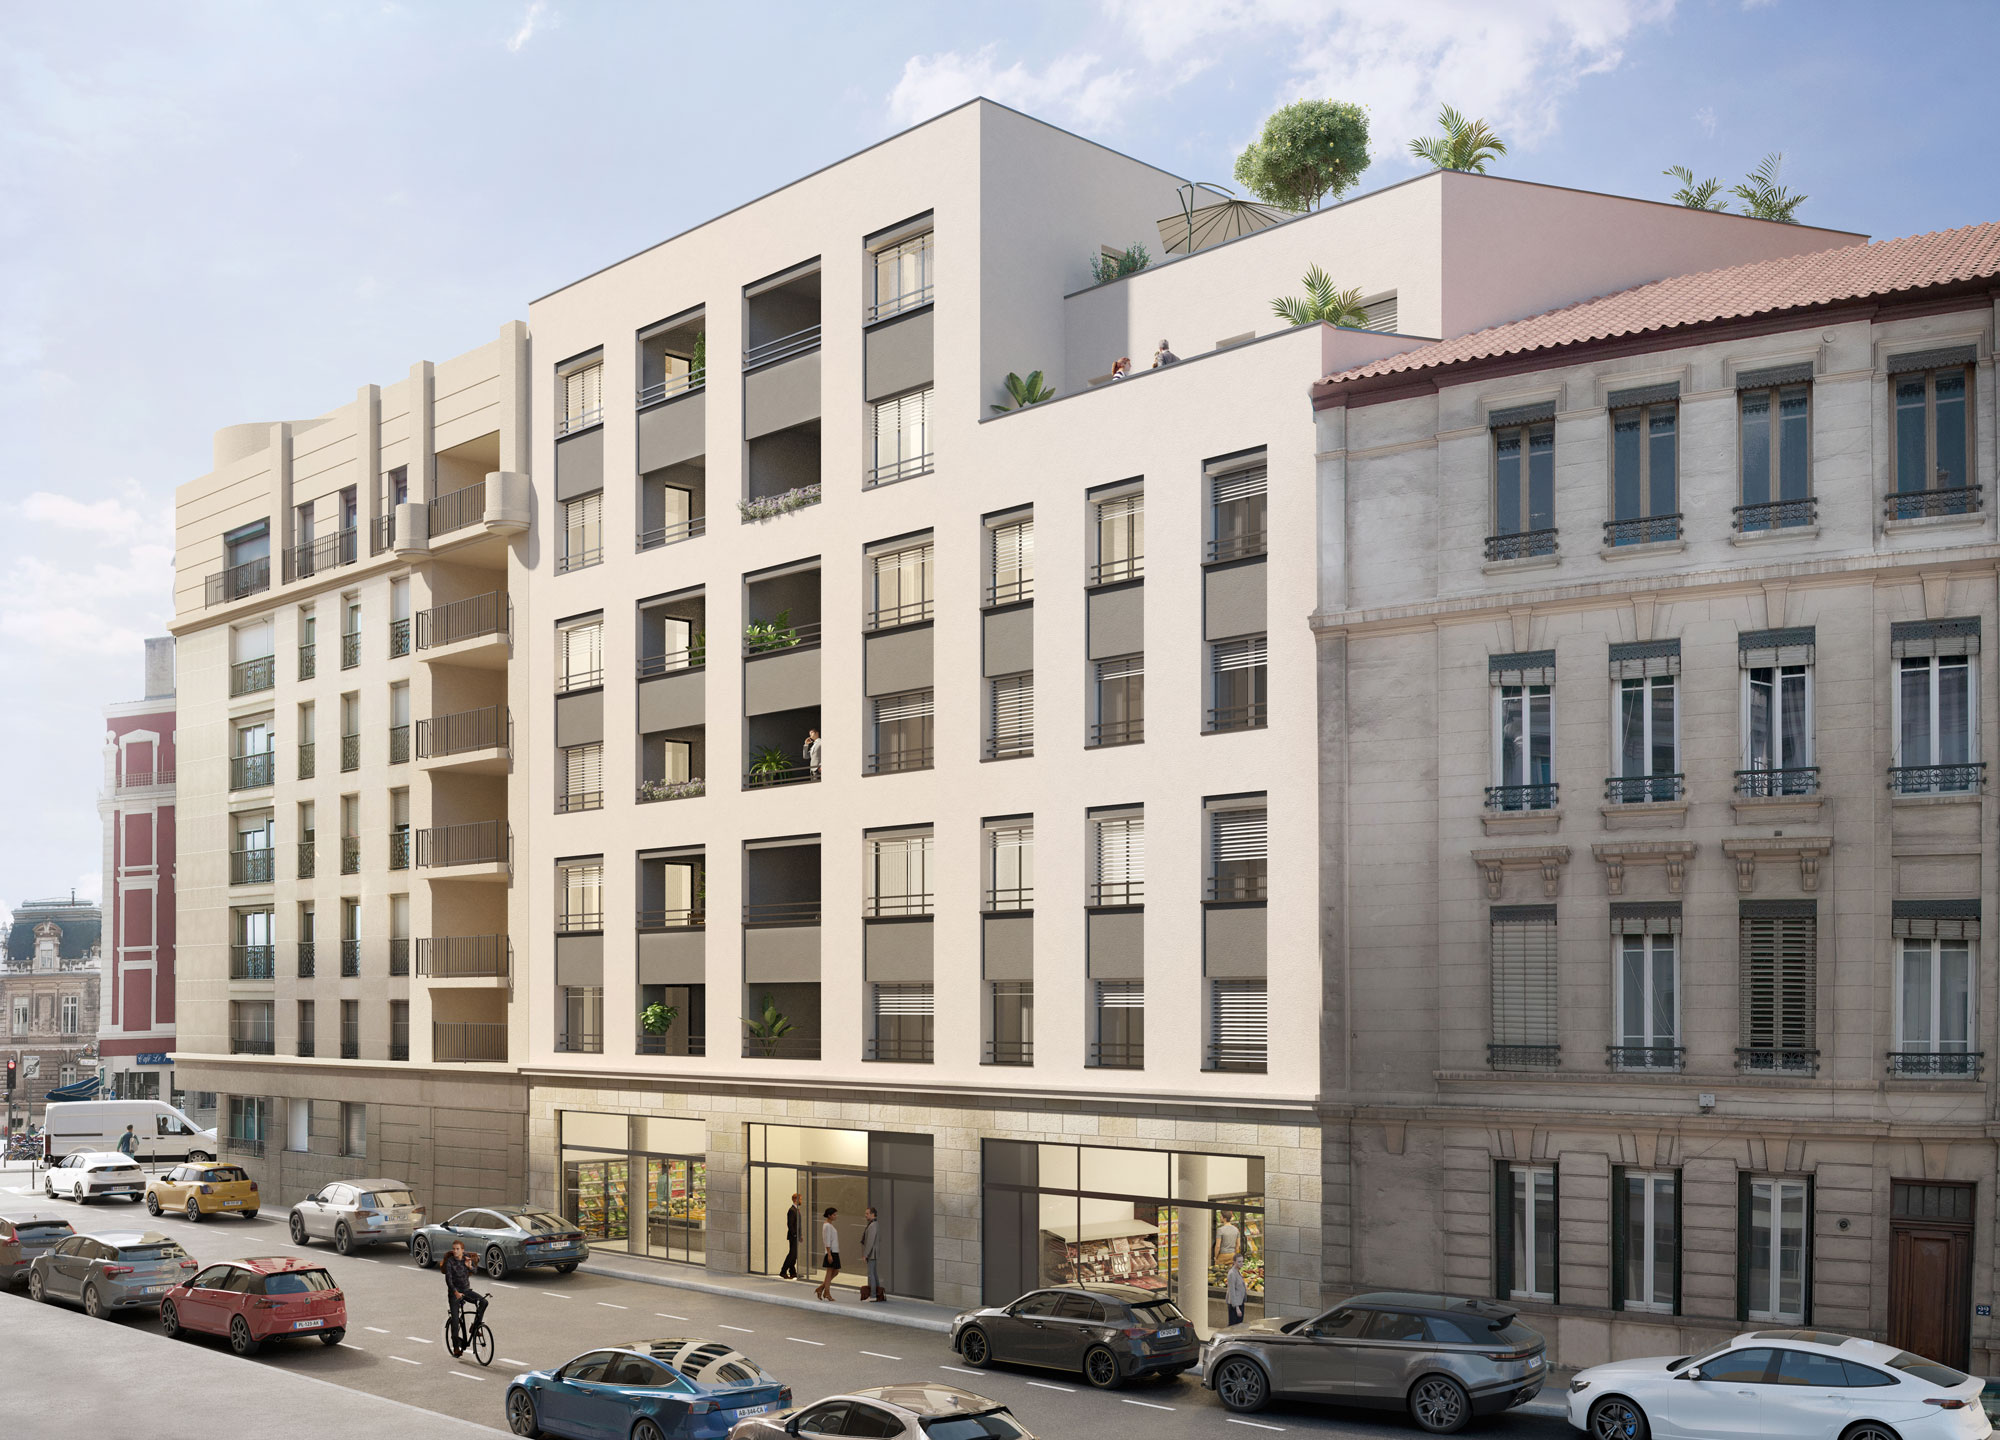 Programme immobilier neuf Lyon 7 à 100m du métro B Jean Macé